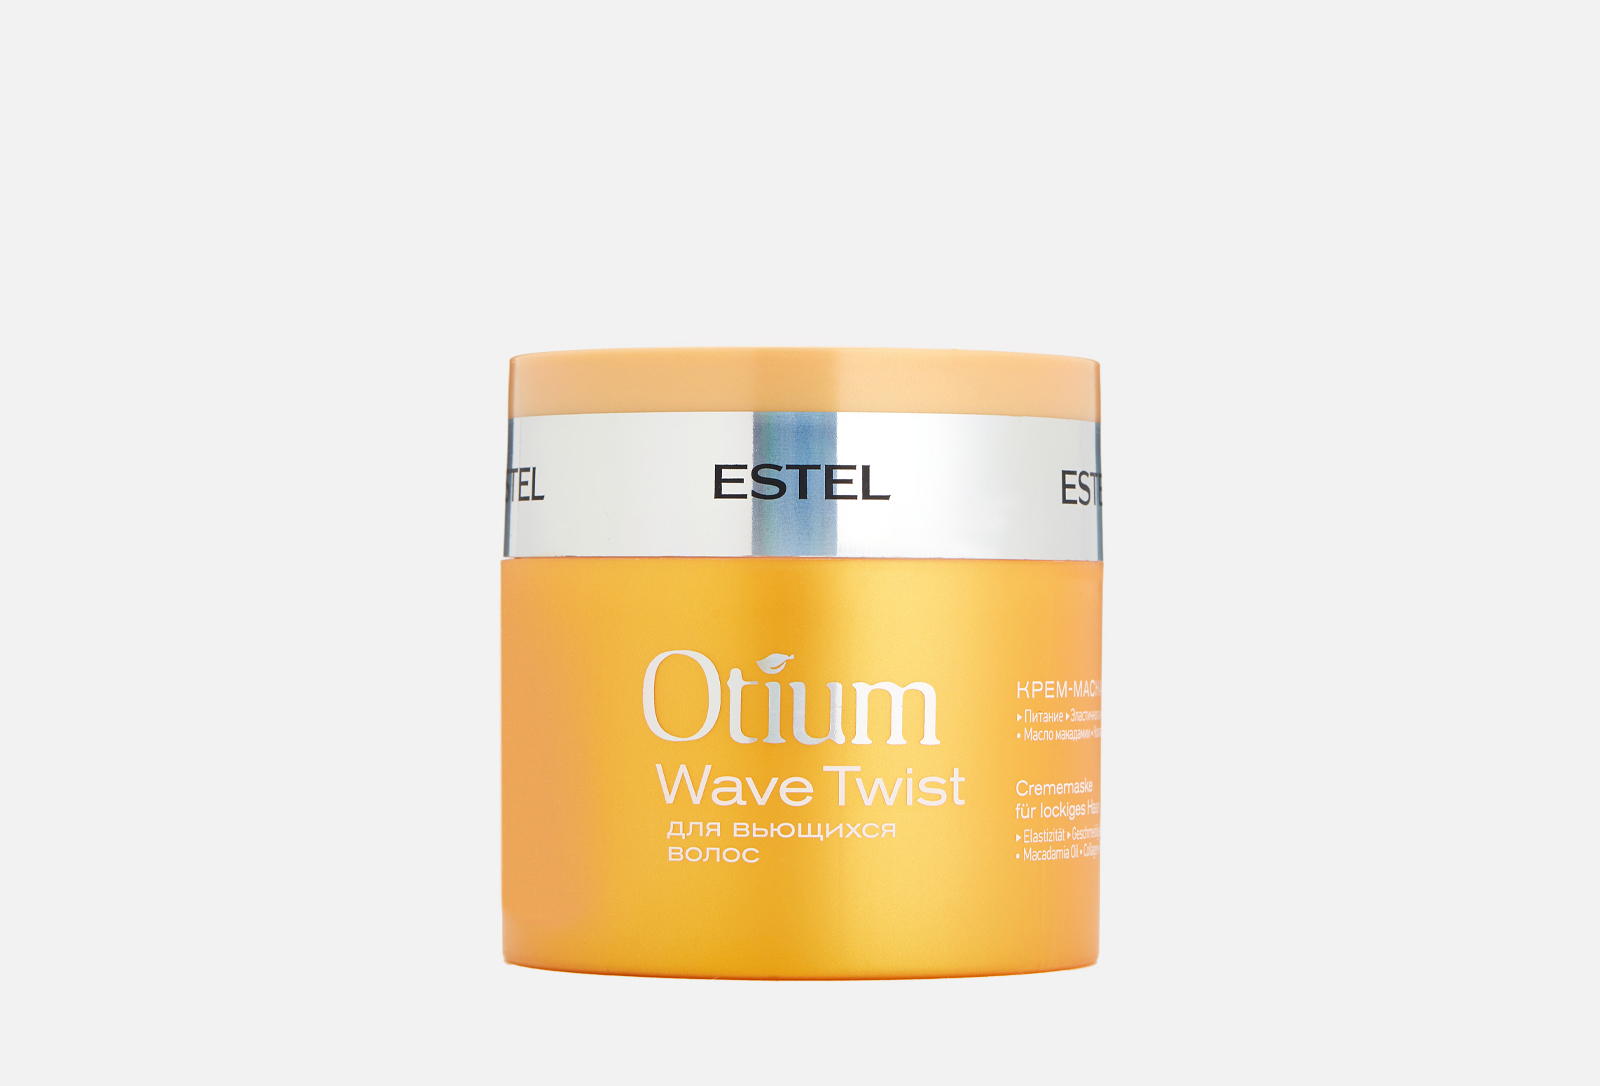 Estel Otium Wave Twist крем-маска для вьющихся волос 300 мл. Otium Wave Twist для вьющихся волос. Крем-маска для вьющихся волос Otium Wave Twist. Эстель отиум для вьющихся волос. Крем для кудрявых волос отзывы